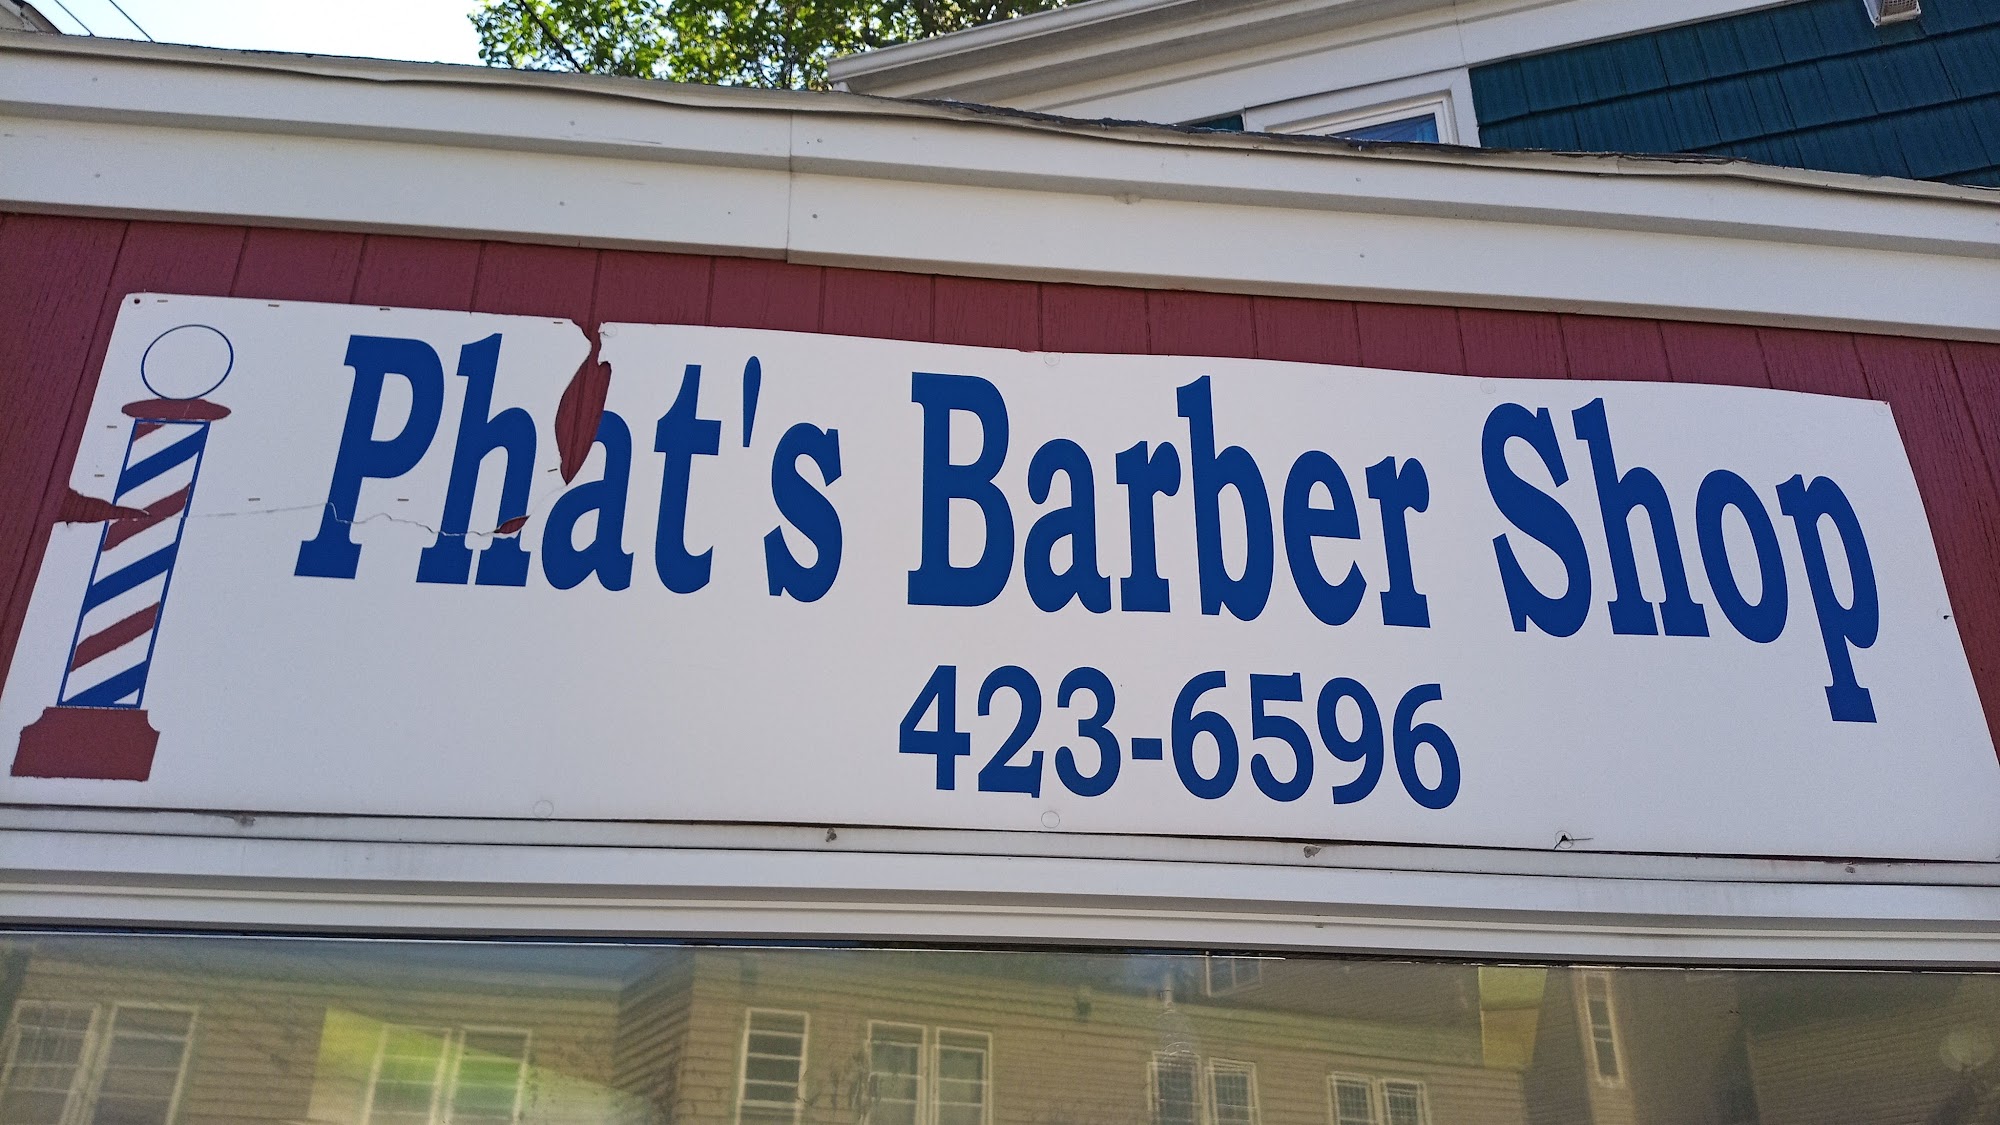 Phat's Barber Shop